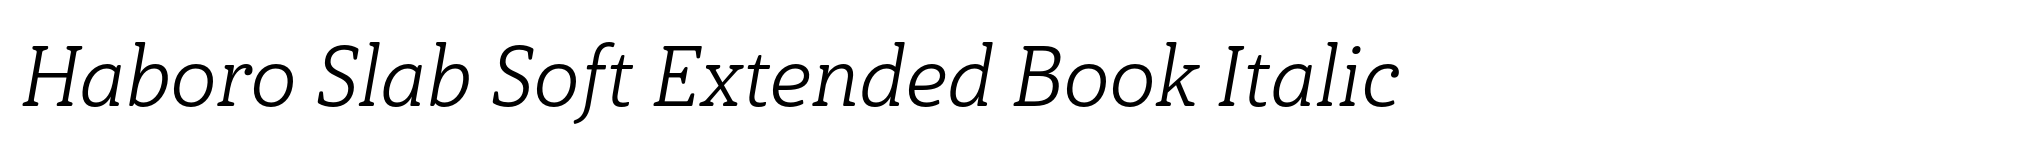 Haboro Slab Soft Extended Book Italic image